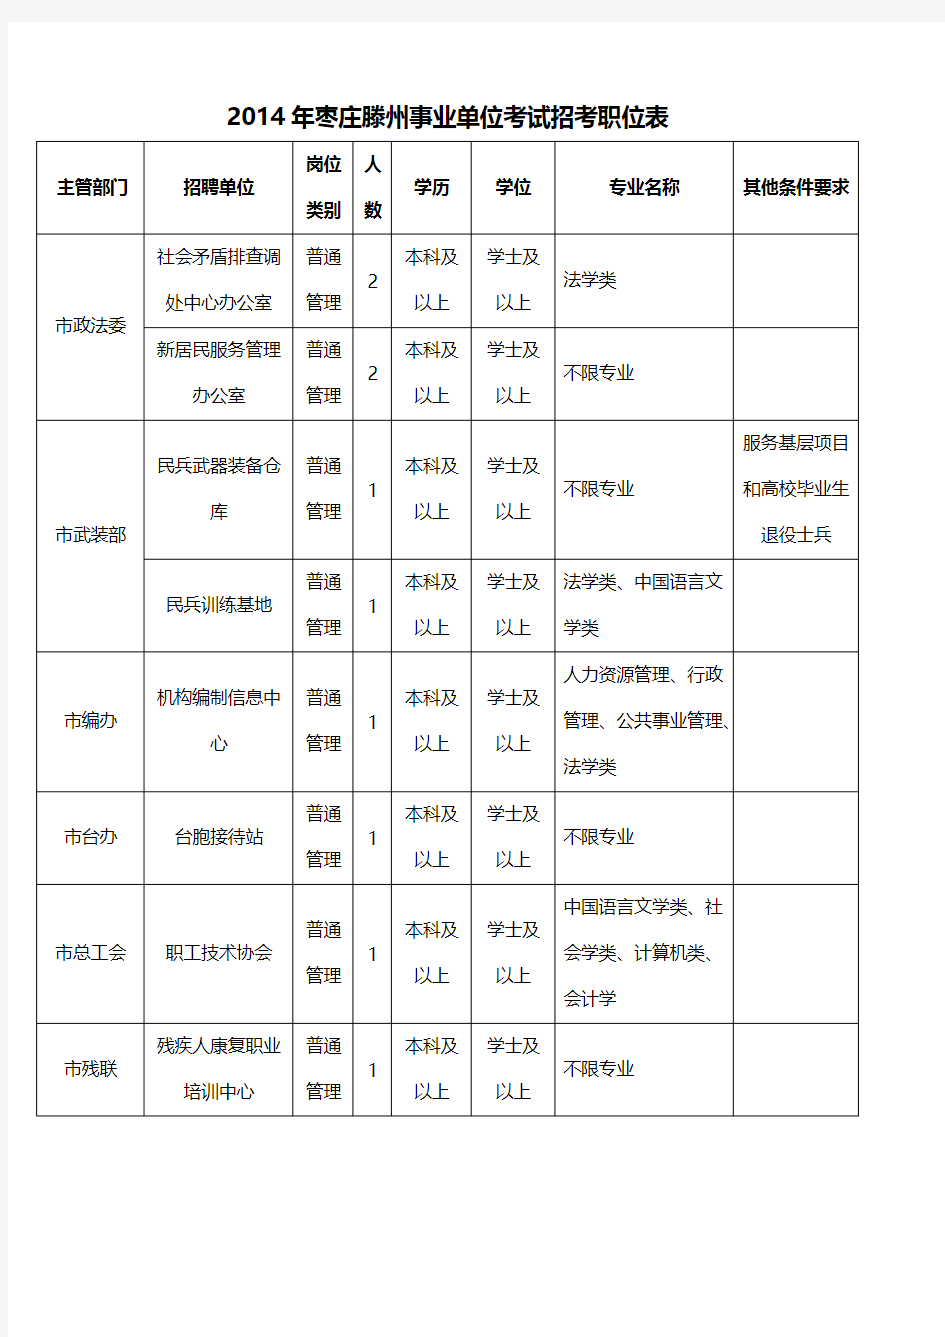 [VIP专享]2014年枣庄滕州事业单位考试招考职位表